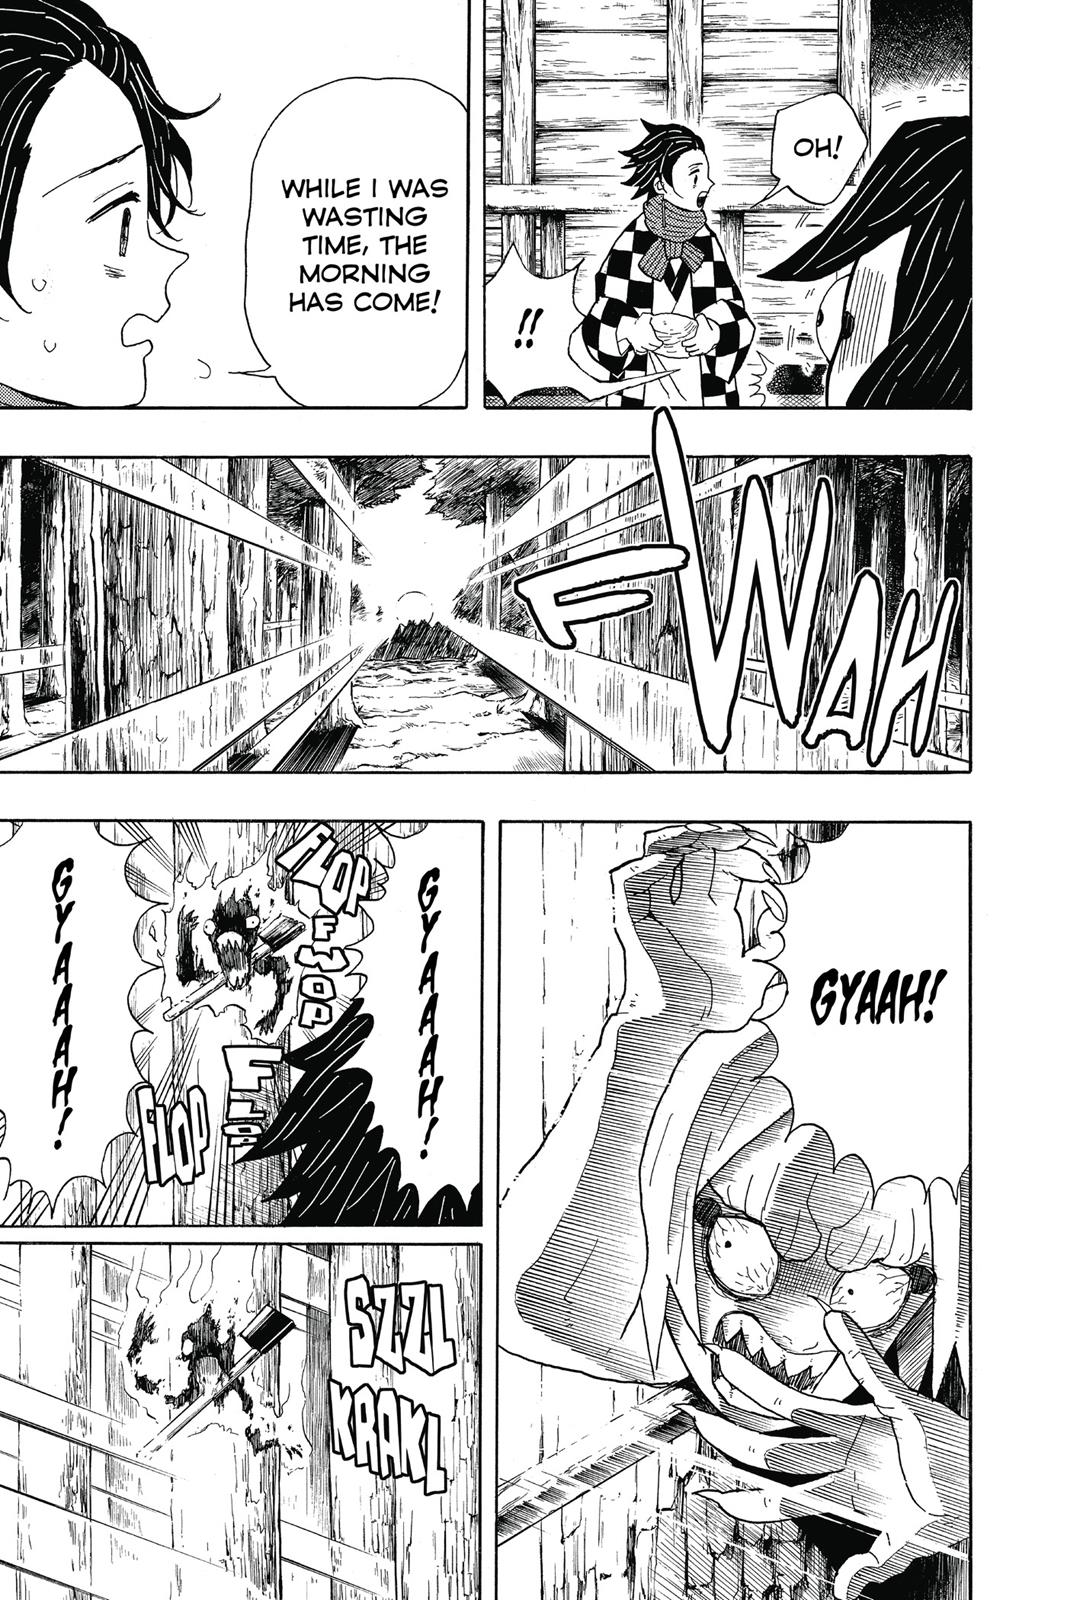 Demon Slayer Manga Manga Chapter - 3 - image 7